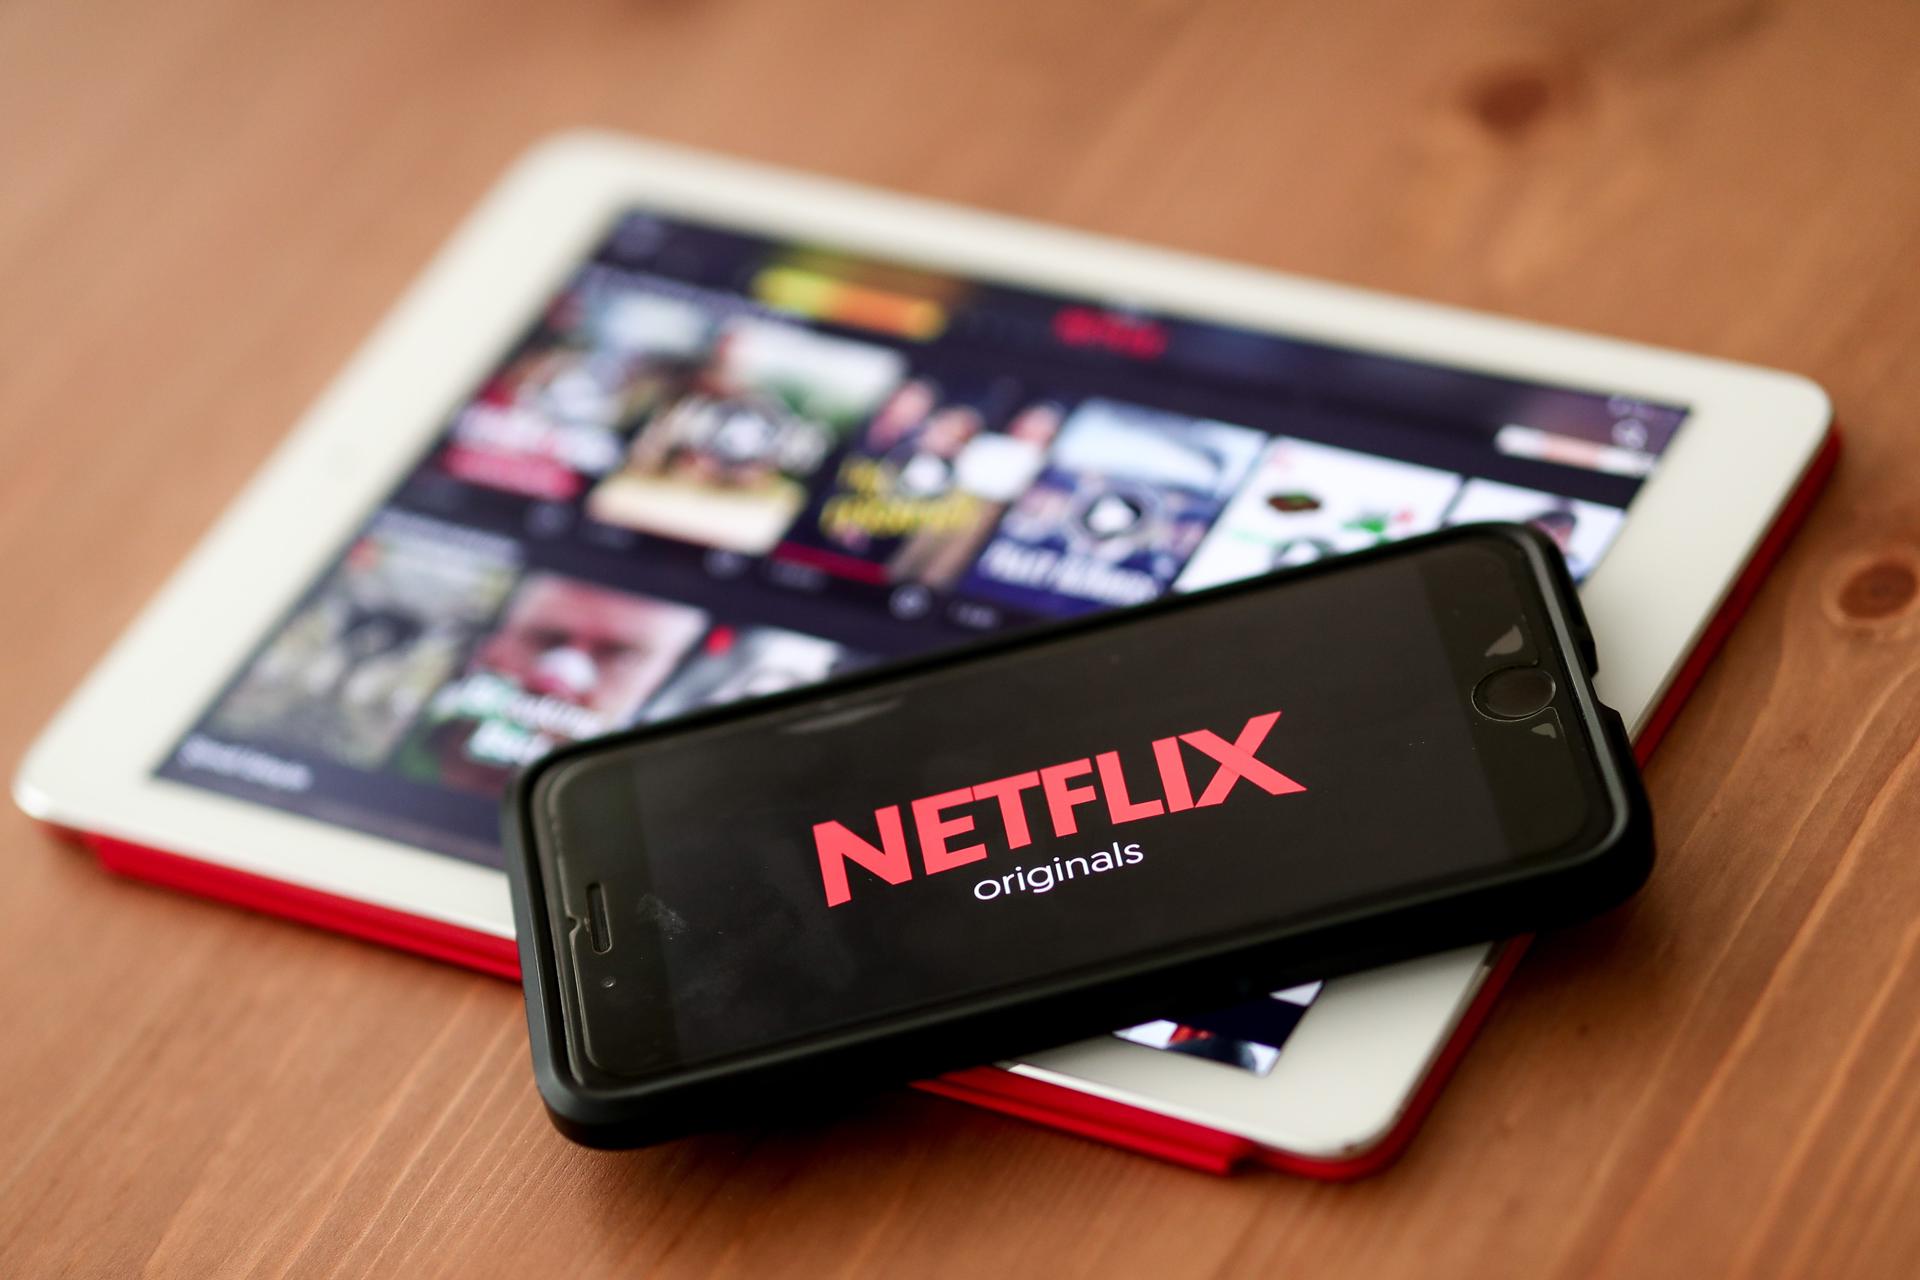 Netflix comenzará a cobrar por cuentas compartidas